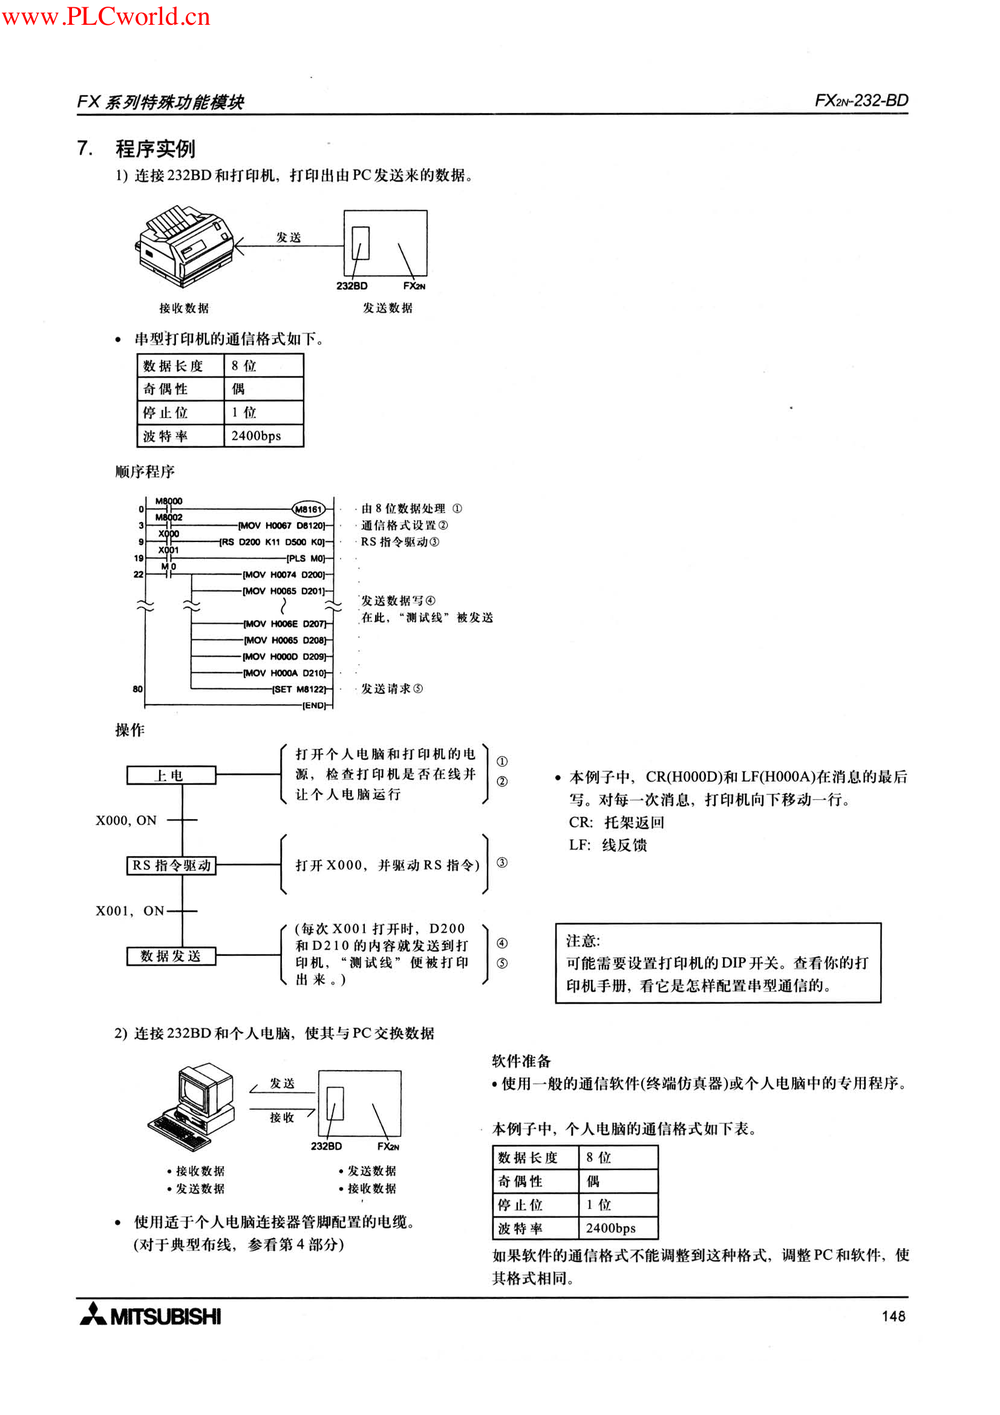 FX2N-232-BD用户指南.pdf-第5页.png